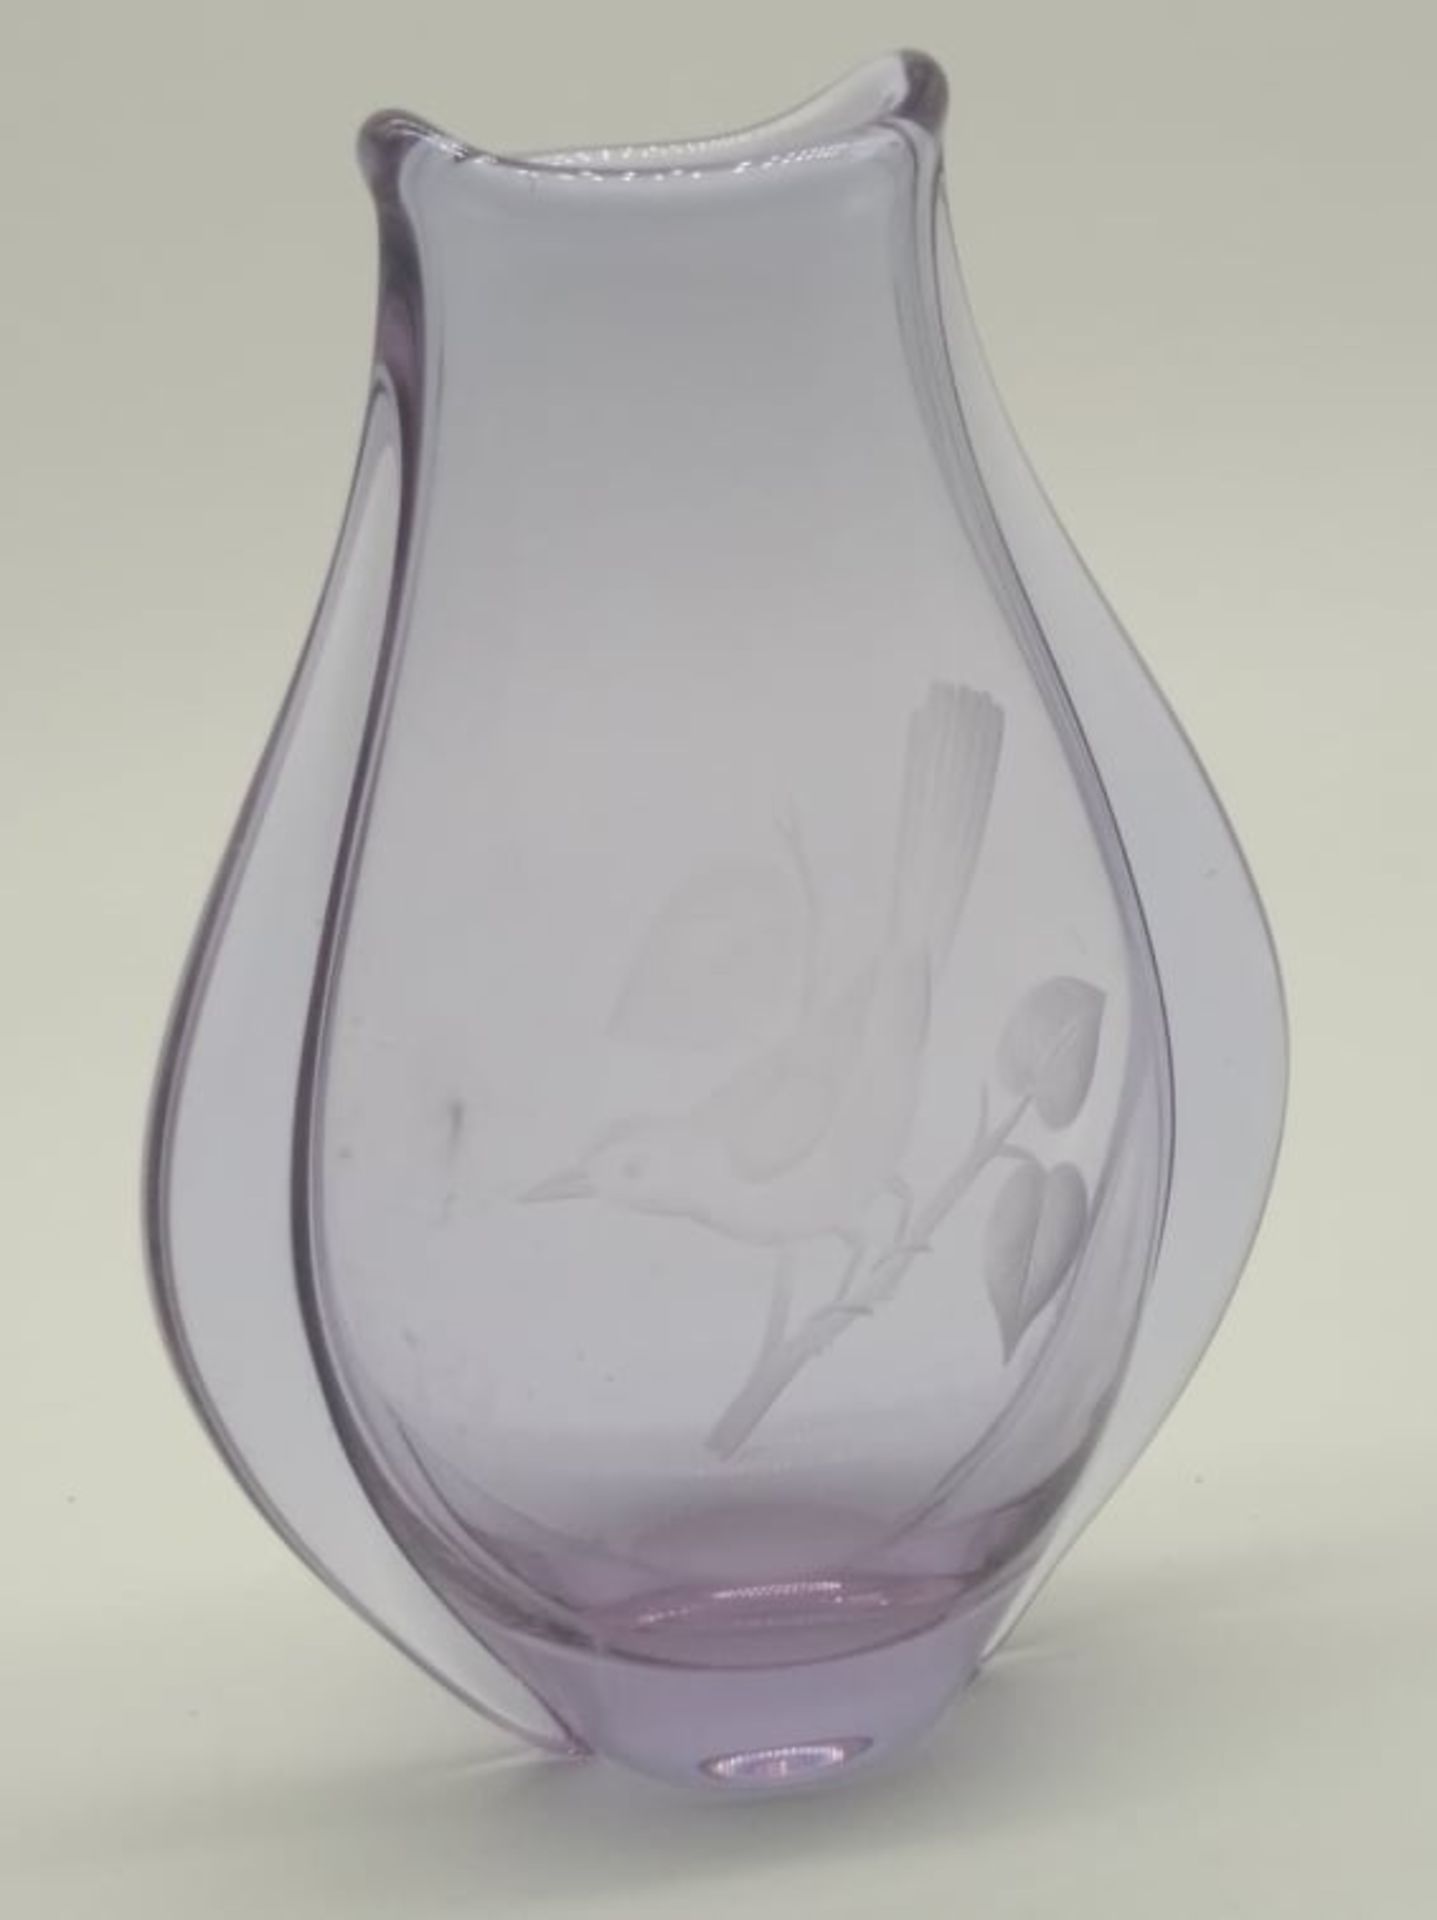 Klinger | Hospodka | ZBS | Alexandrite | 3 Vases - Image 4 of 4